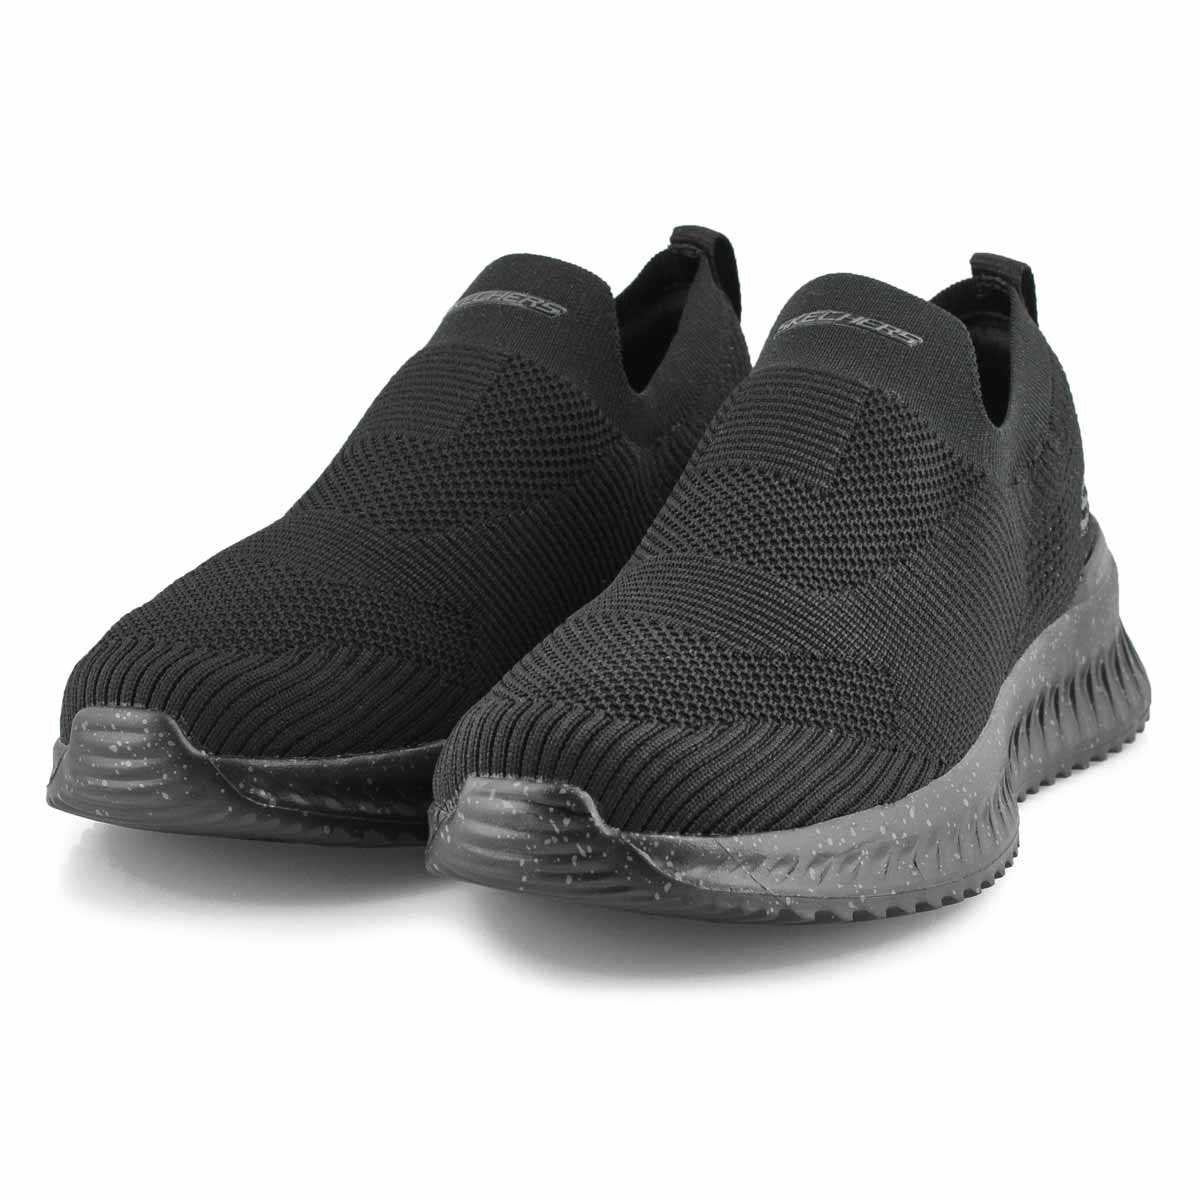 Men's Matera  2.0 Sneakers - Black/Black